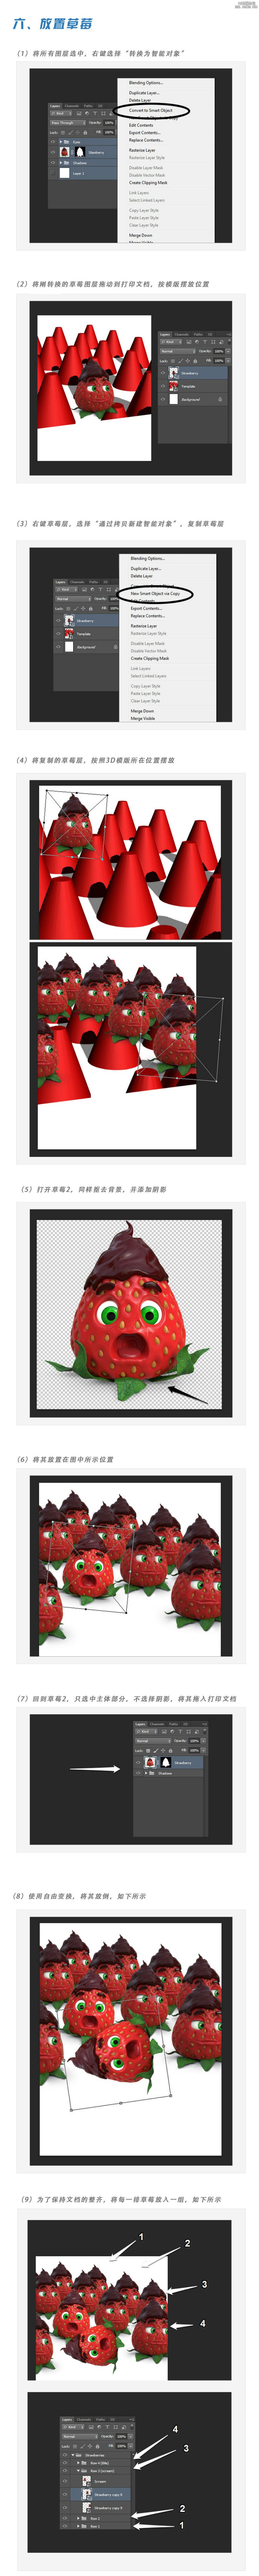 Photoshop合成超酷的3D草莓巧克力甜点